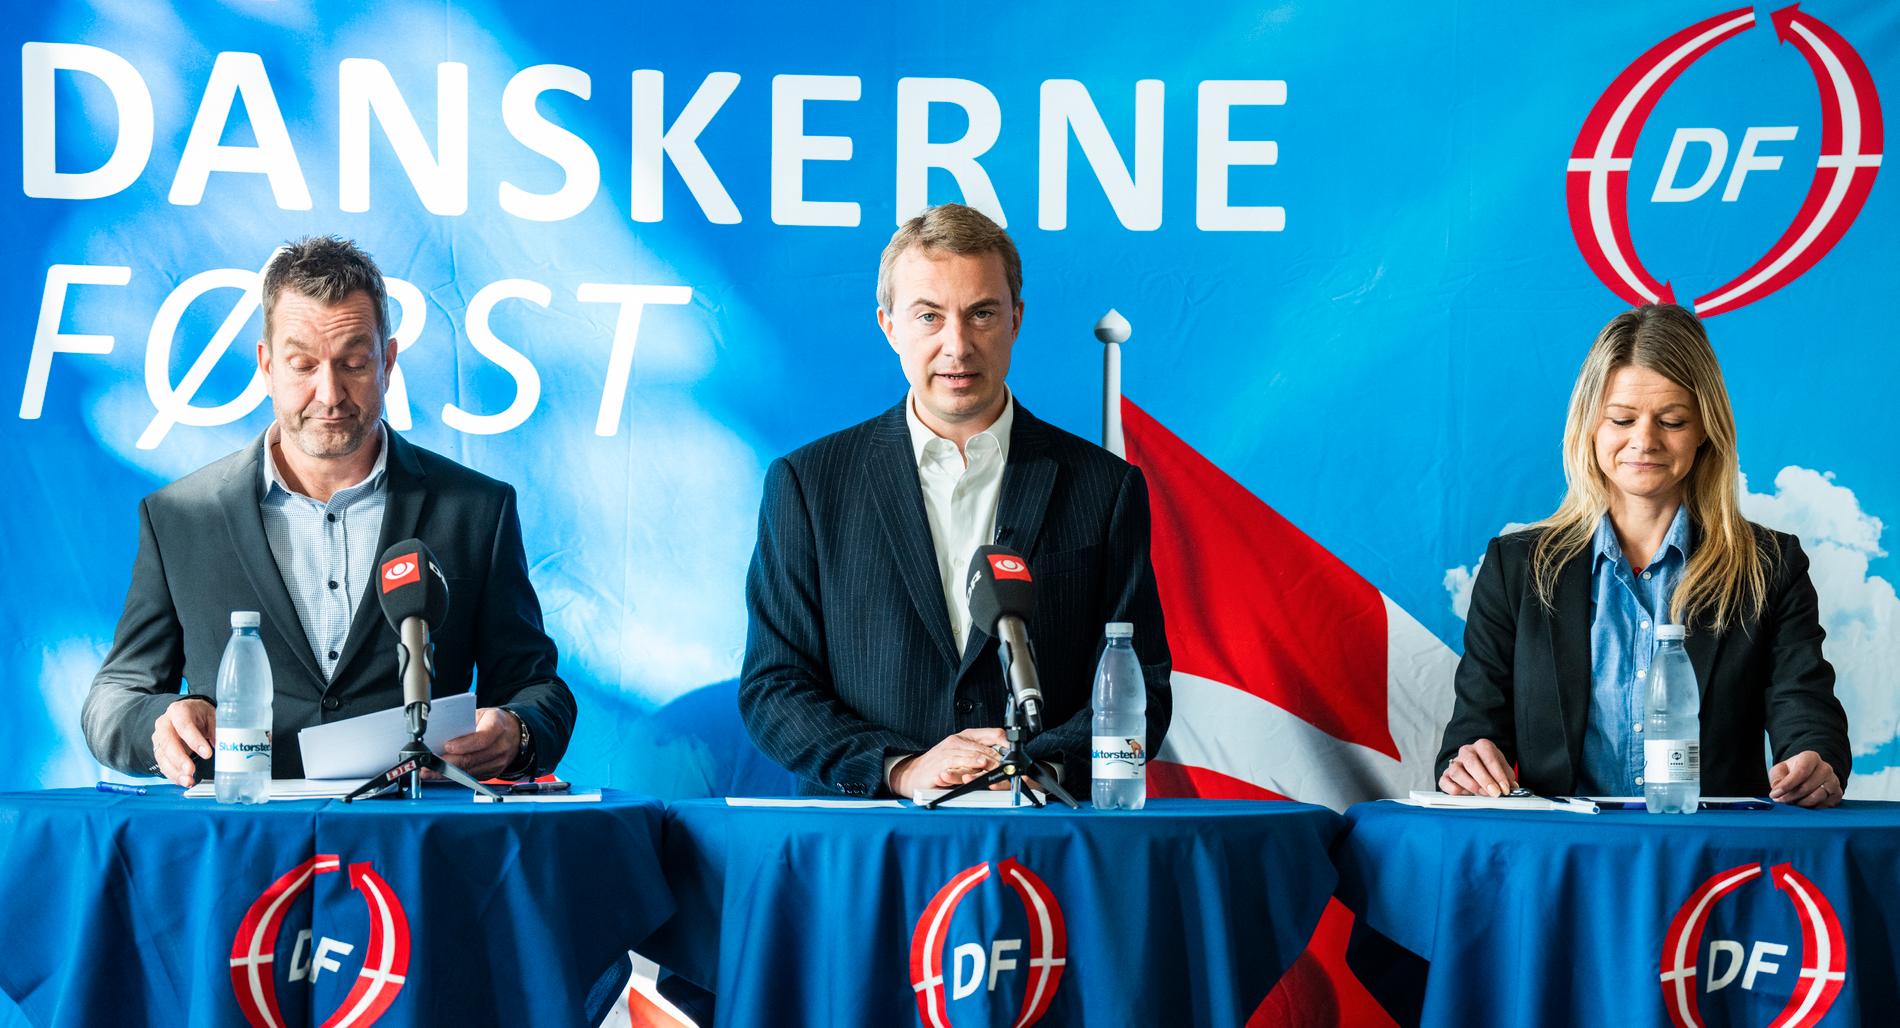  DF:s  partiordförande Morten Messerschmidt tillsammans med partikollegorna Hans Blaaberg och Majbritt Birkholm presenterade partiets rätts- och invandringspolitik i Landstingssalen på Christiansborg i söndags. 